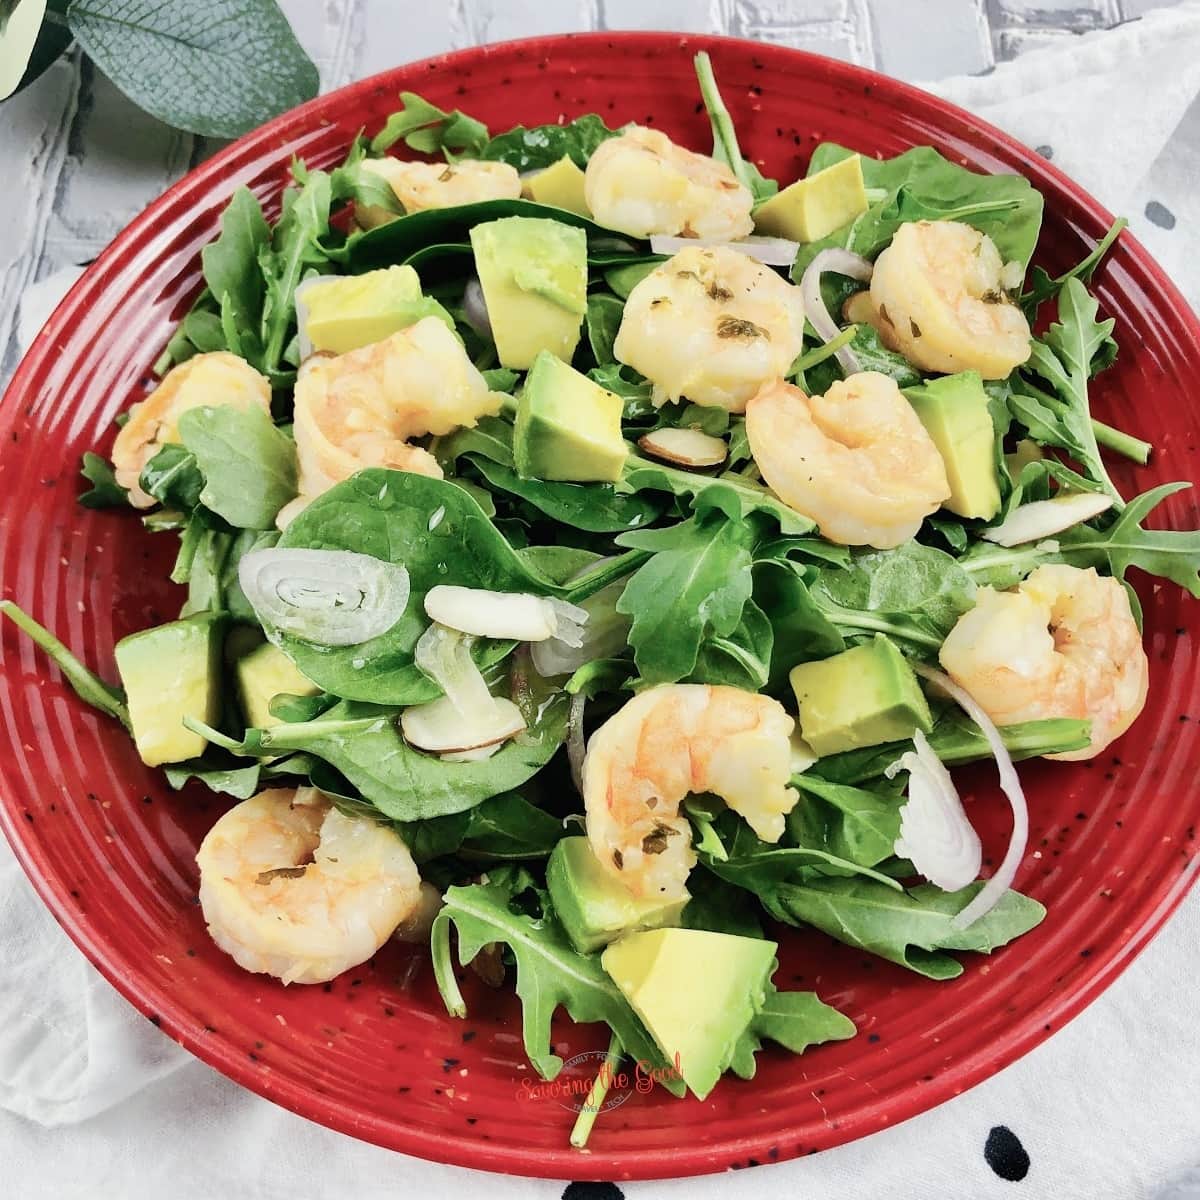 Shrimp Avocado Salad Recipe With Citrus Dressing square image